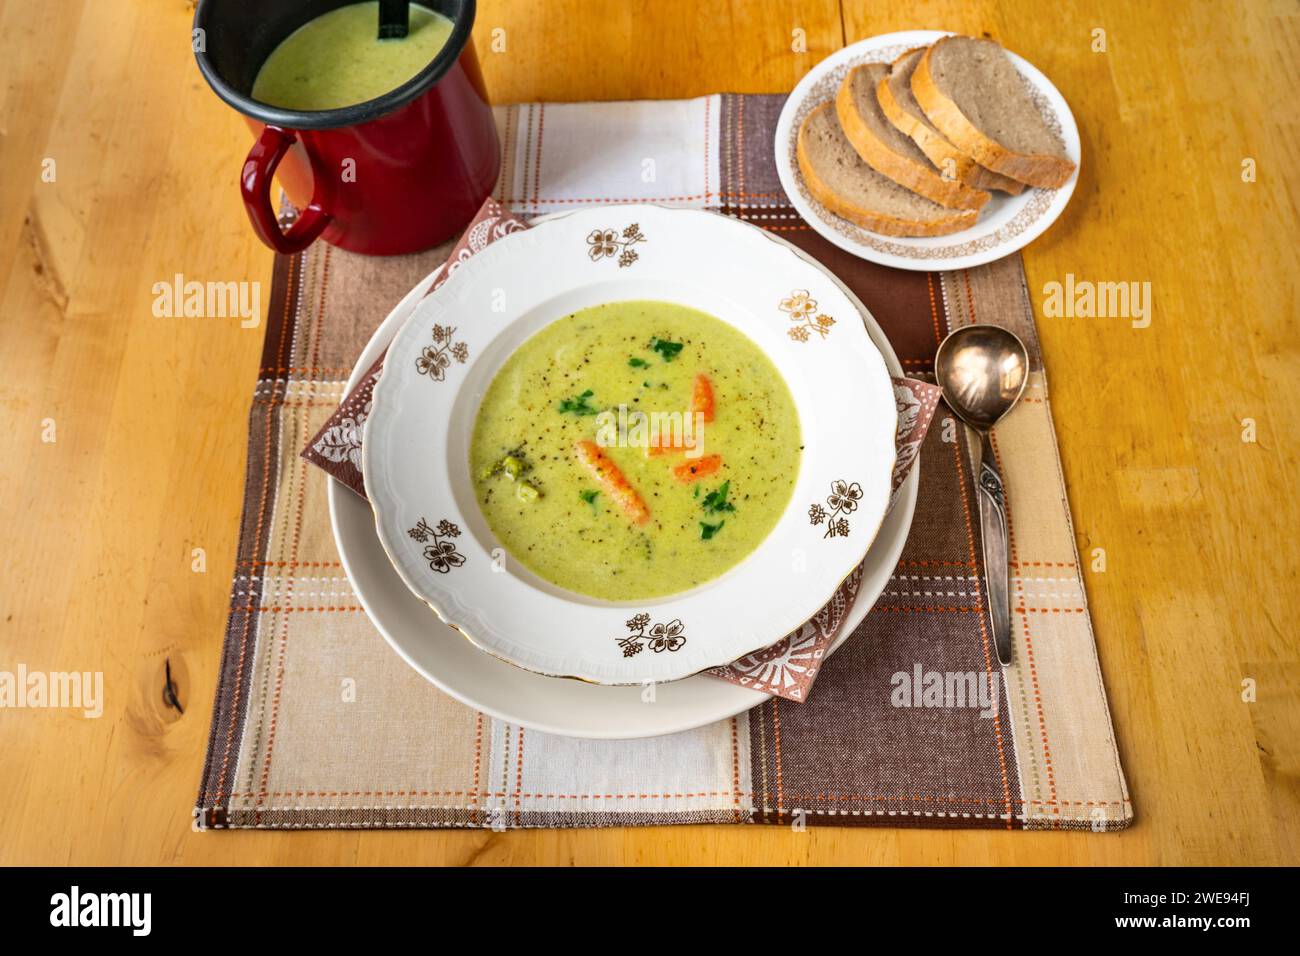 Cremige Brokkoli-Suppe im Teller und im Topf, Kelle, geschnittenes Brot auf Teller auf kariertem Tischtuch auf Holztisch. Stockfoto